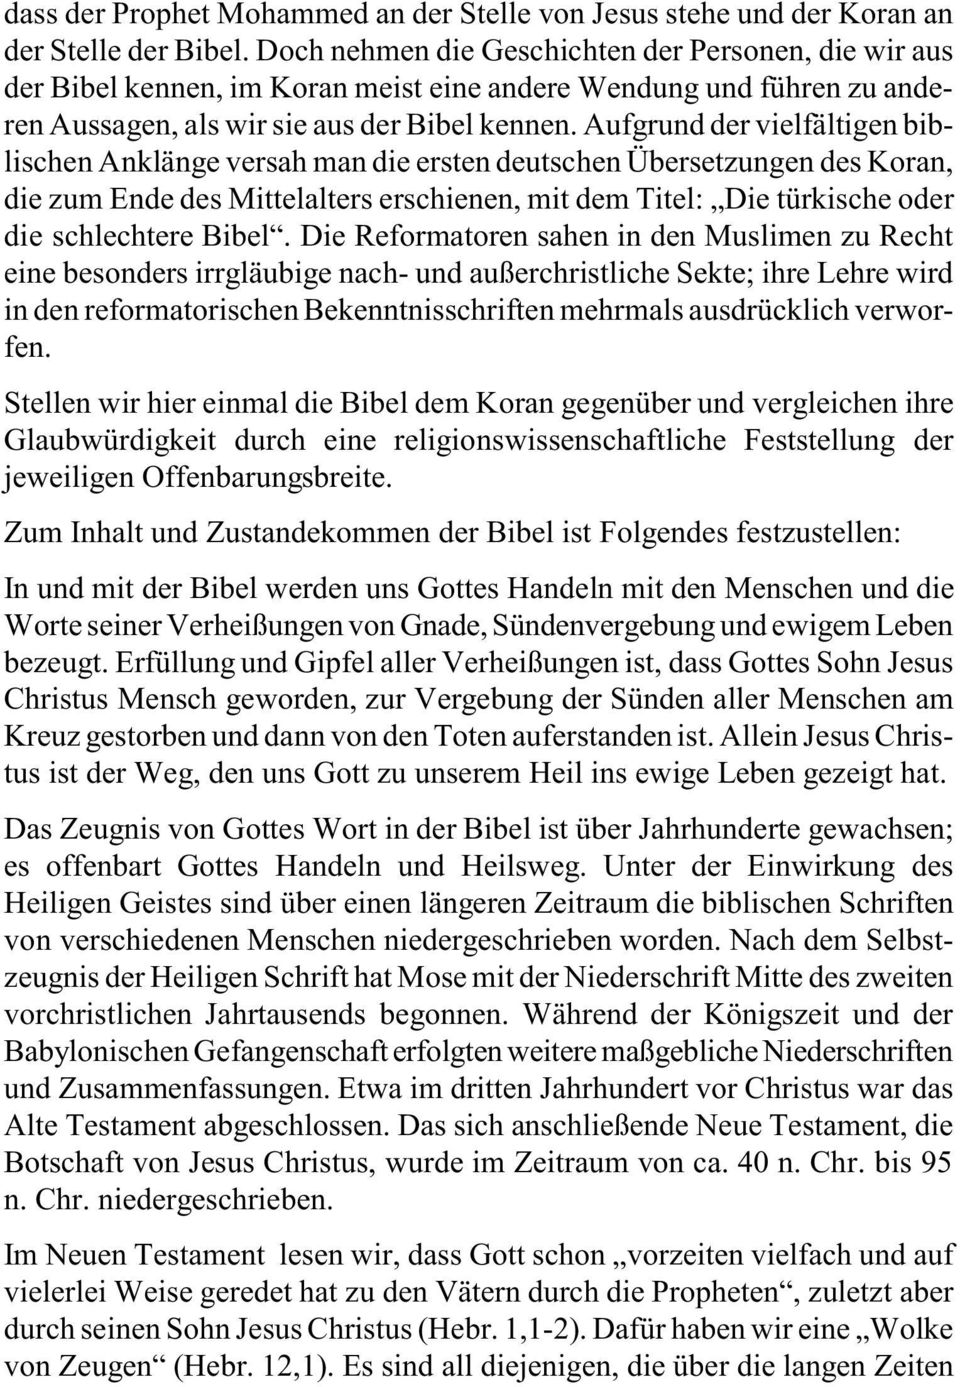 Aufgrund der vielfältigen biblischen Anklänge versah man die ersten deutschen Übersetzungen des Koran, die zum Ende des Mittelalters erschienen, mit dem Titel: Die türkische oder die schlechtere